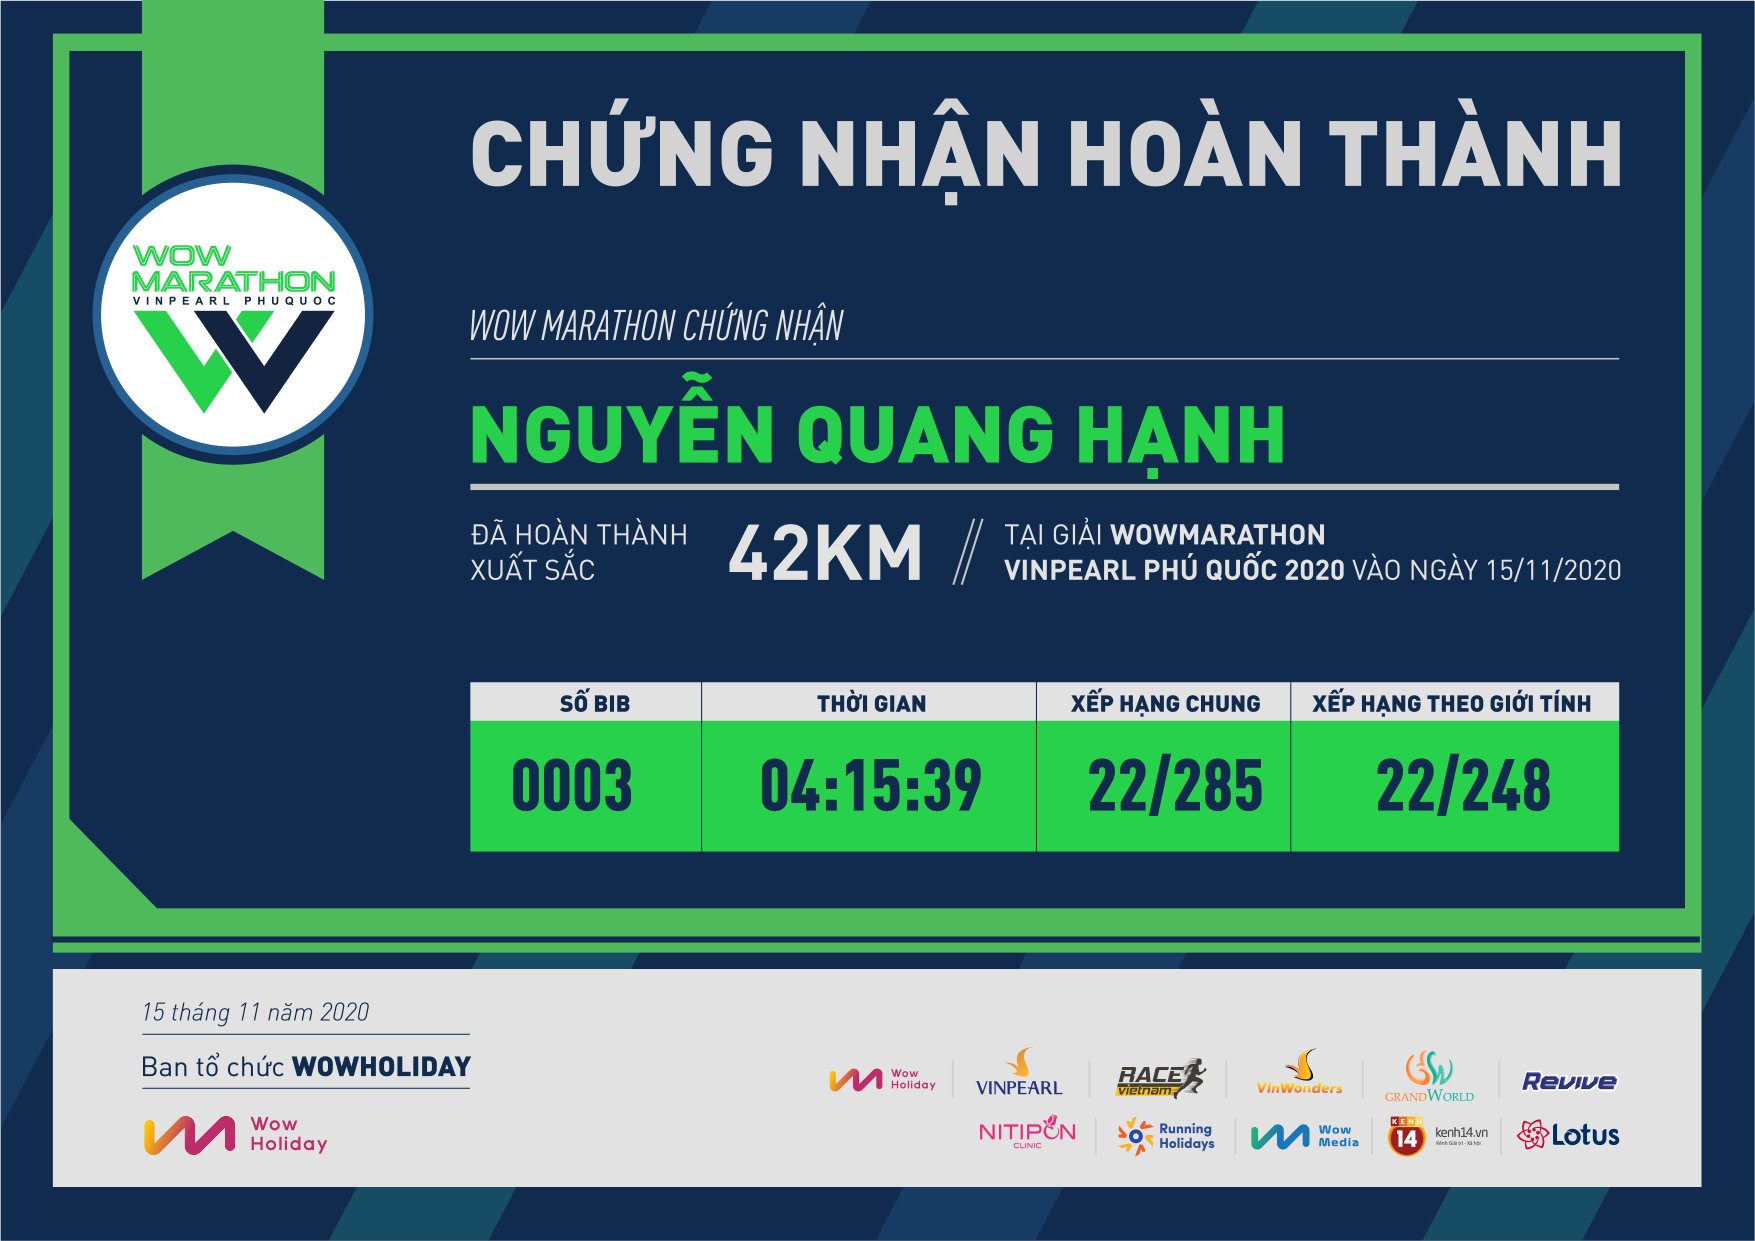 0003 - Nguyễn Quang Hạnh